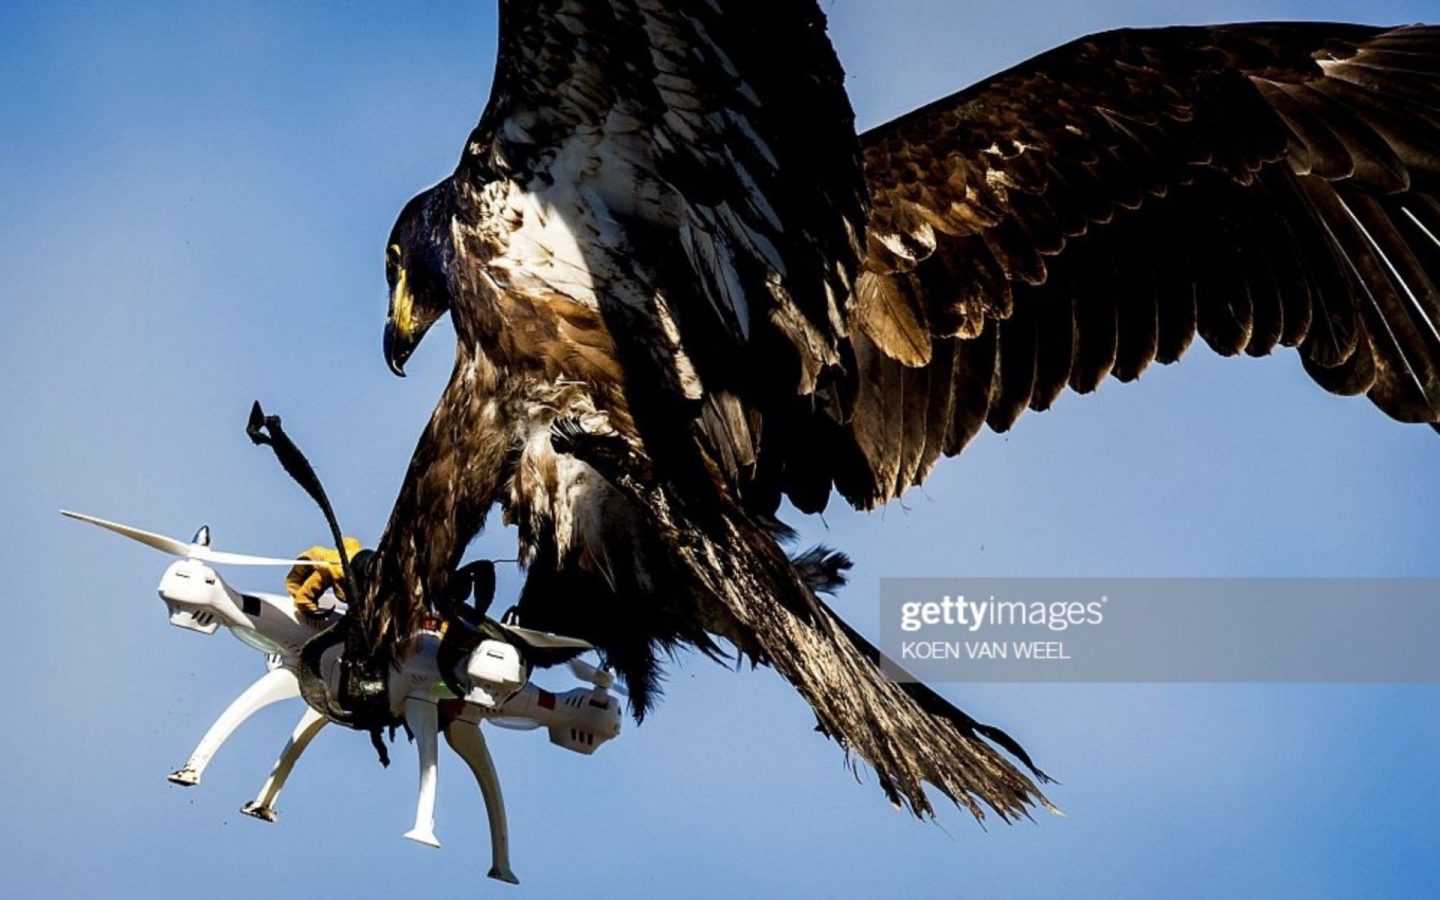 Фото с орлом-ловцом дрона становится вирусным. Вот история — Drone Digest